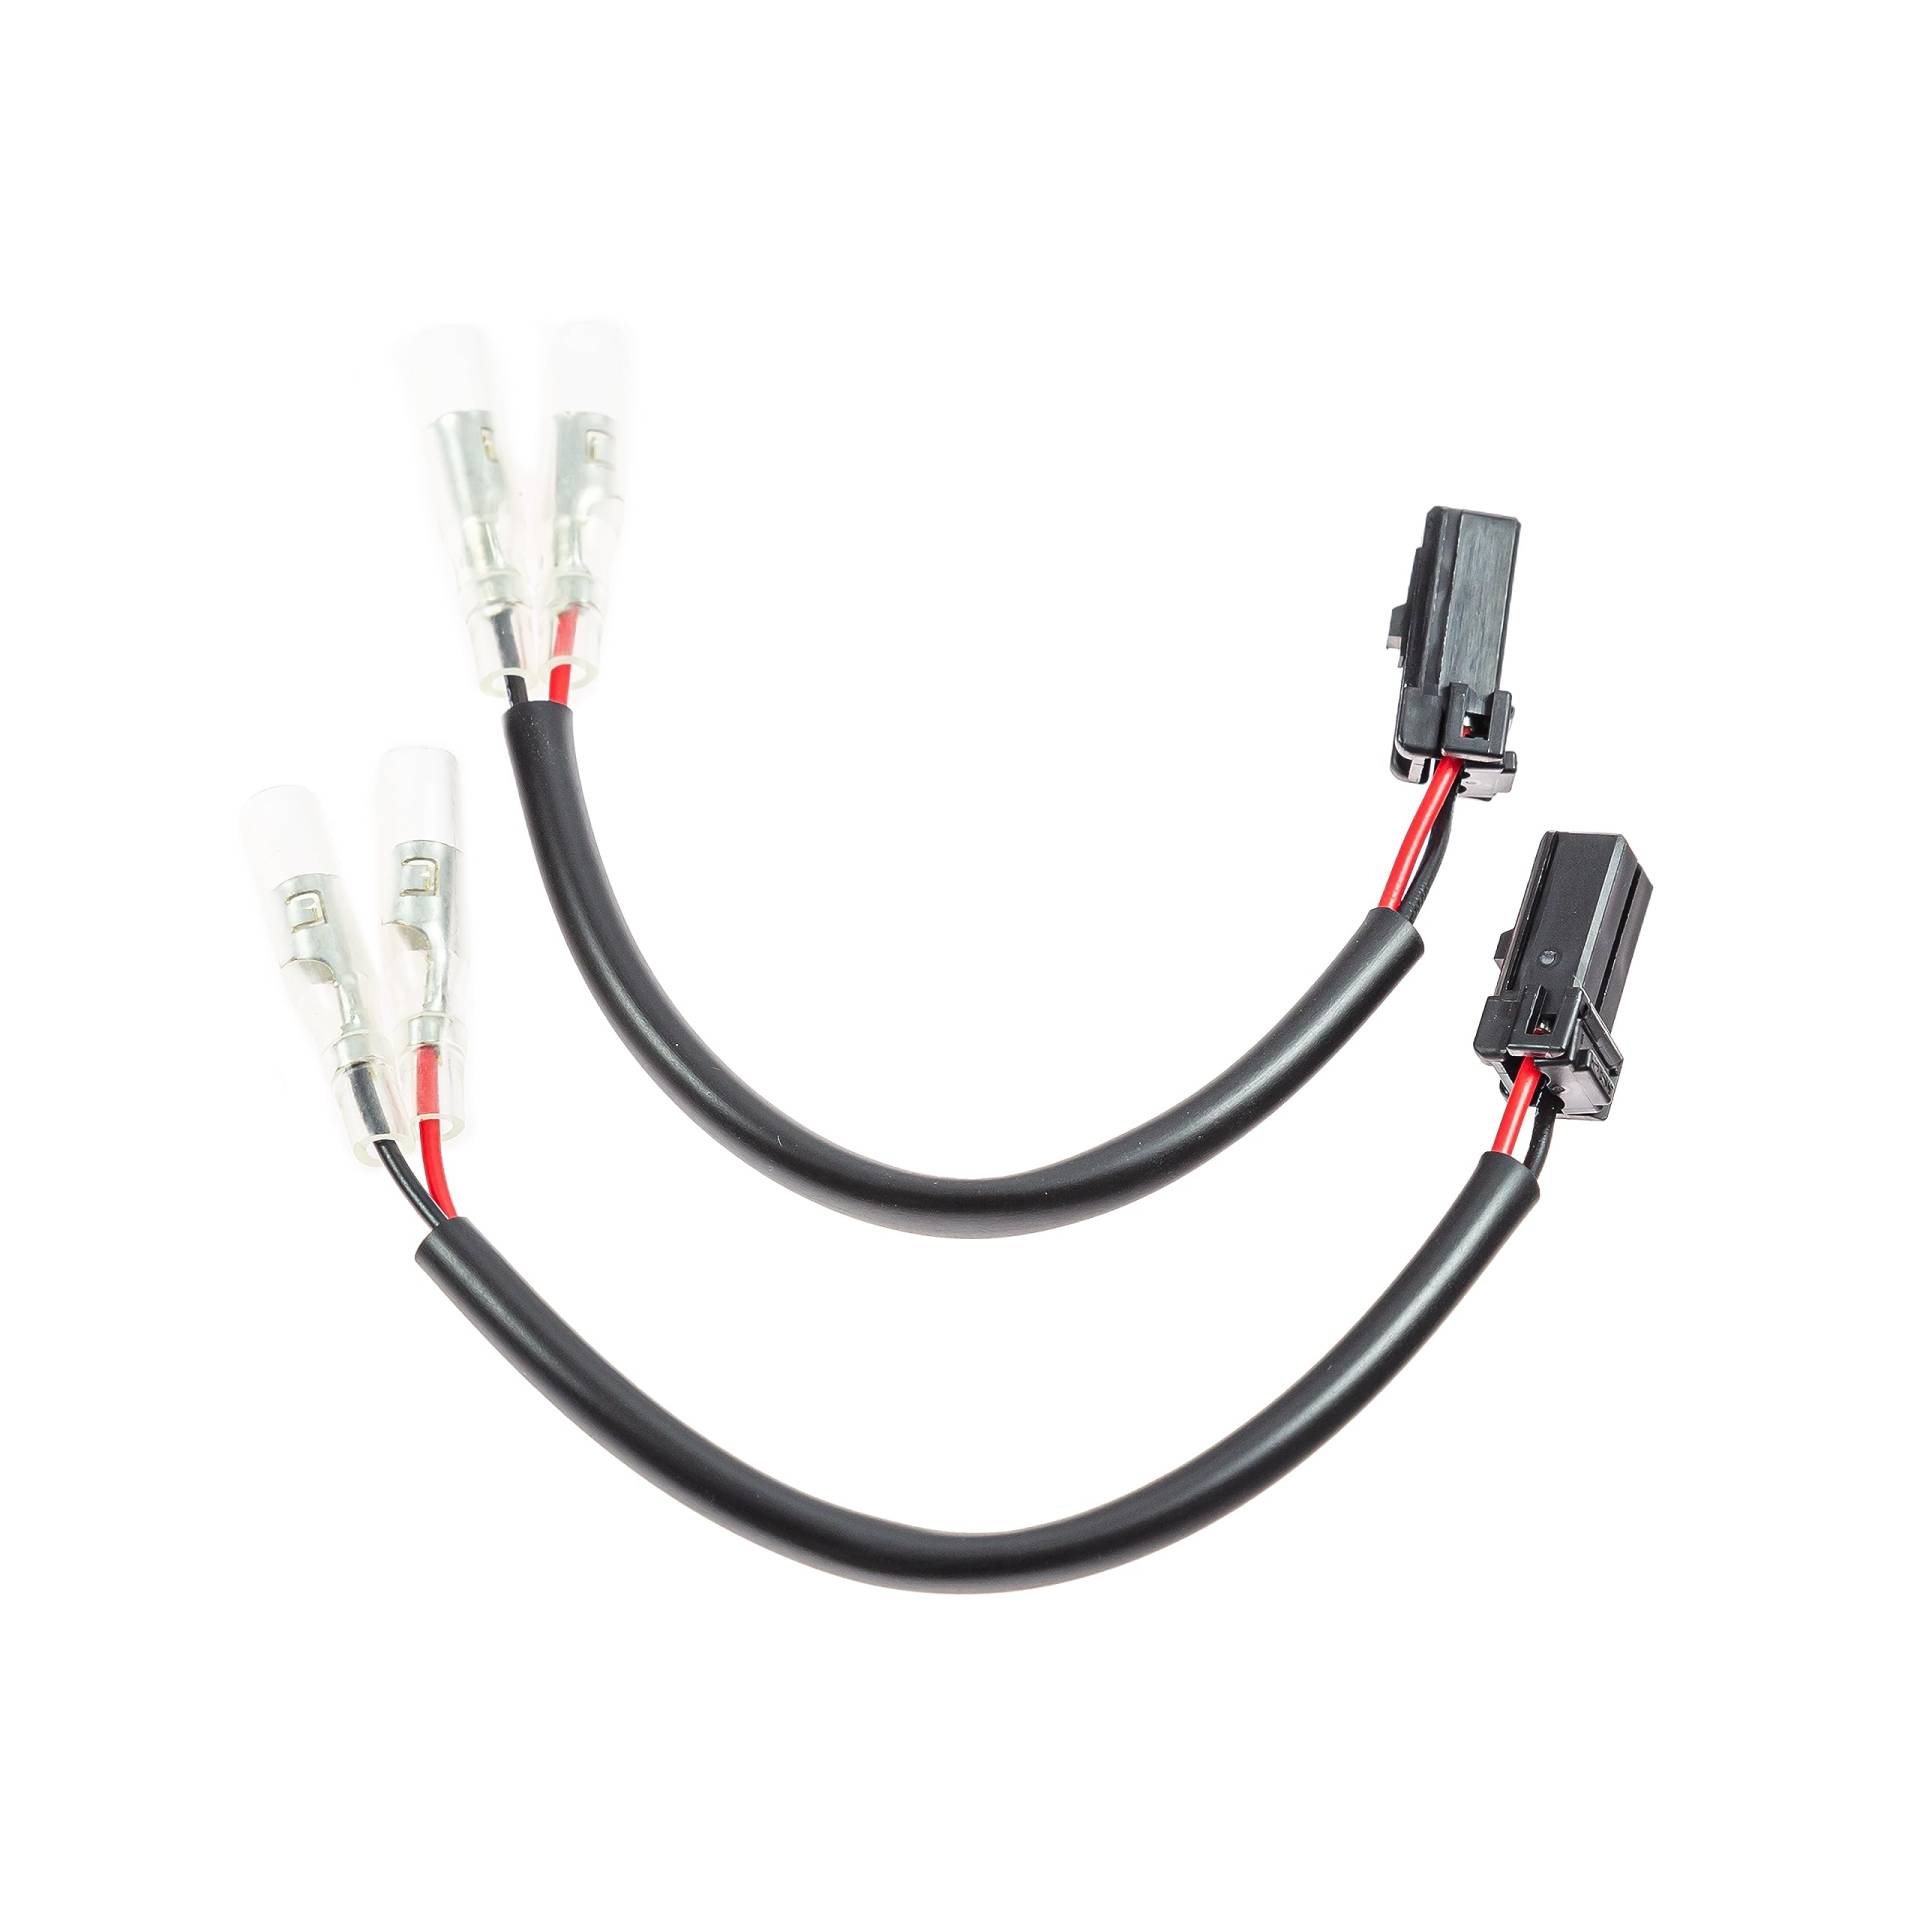 10007113 Blinkeradapterkabel Kabel Adapter Plug & Play für Blinker kompatibel mit: Harley Davidson für Motorrad Ersatzteile von ZIEGER